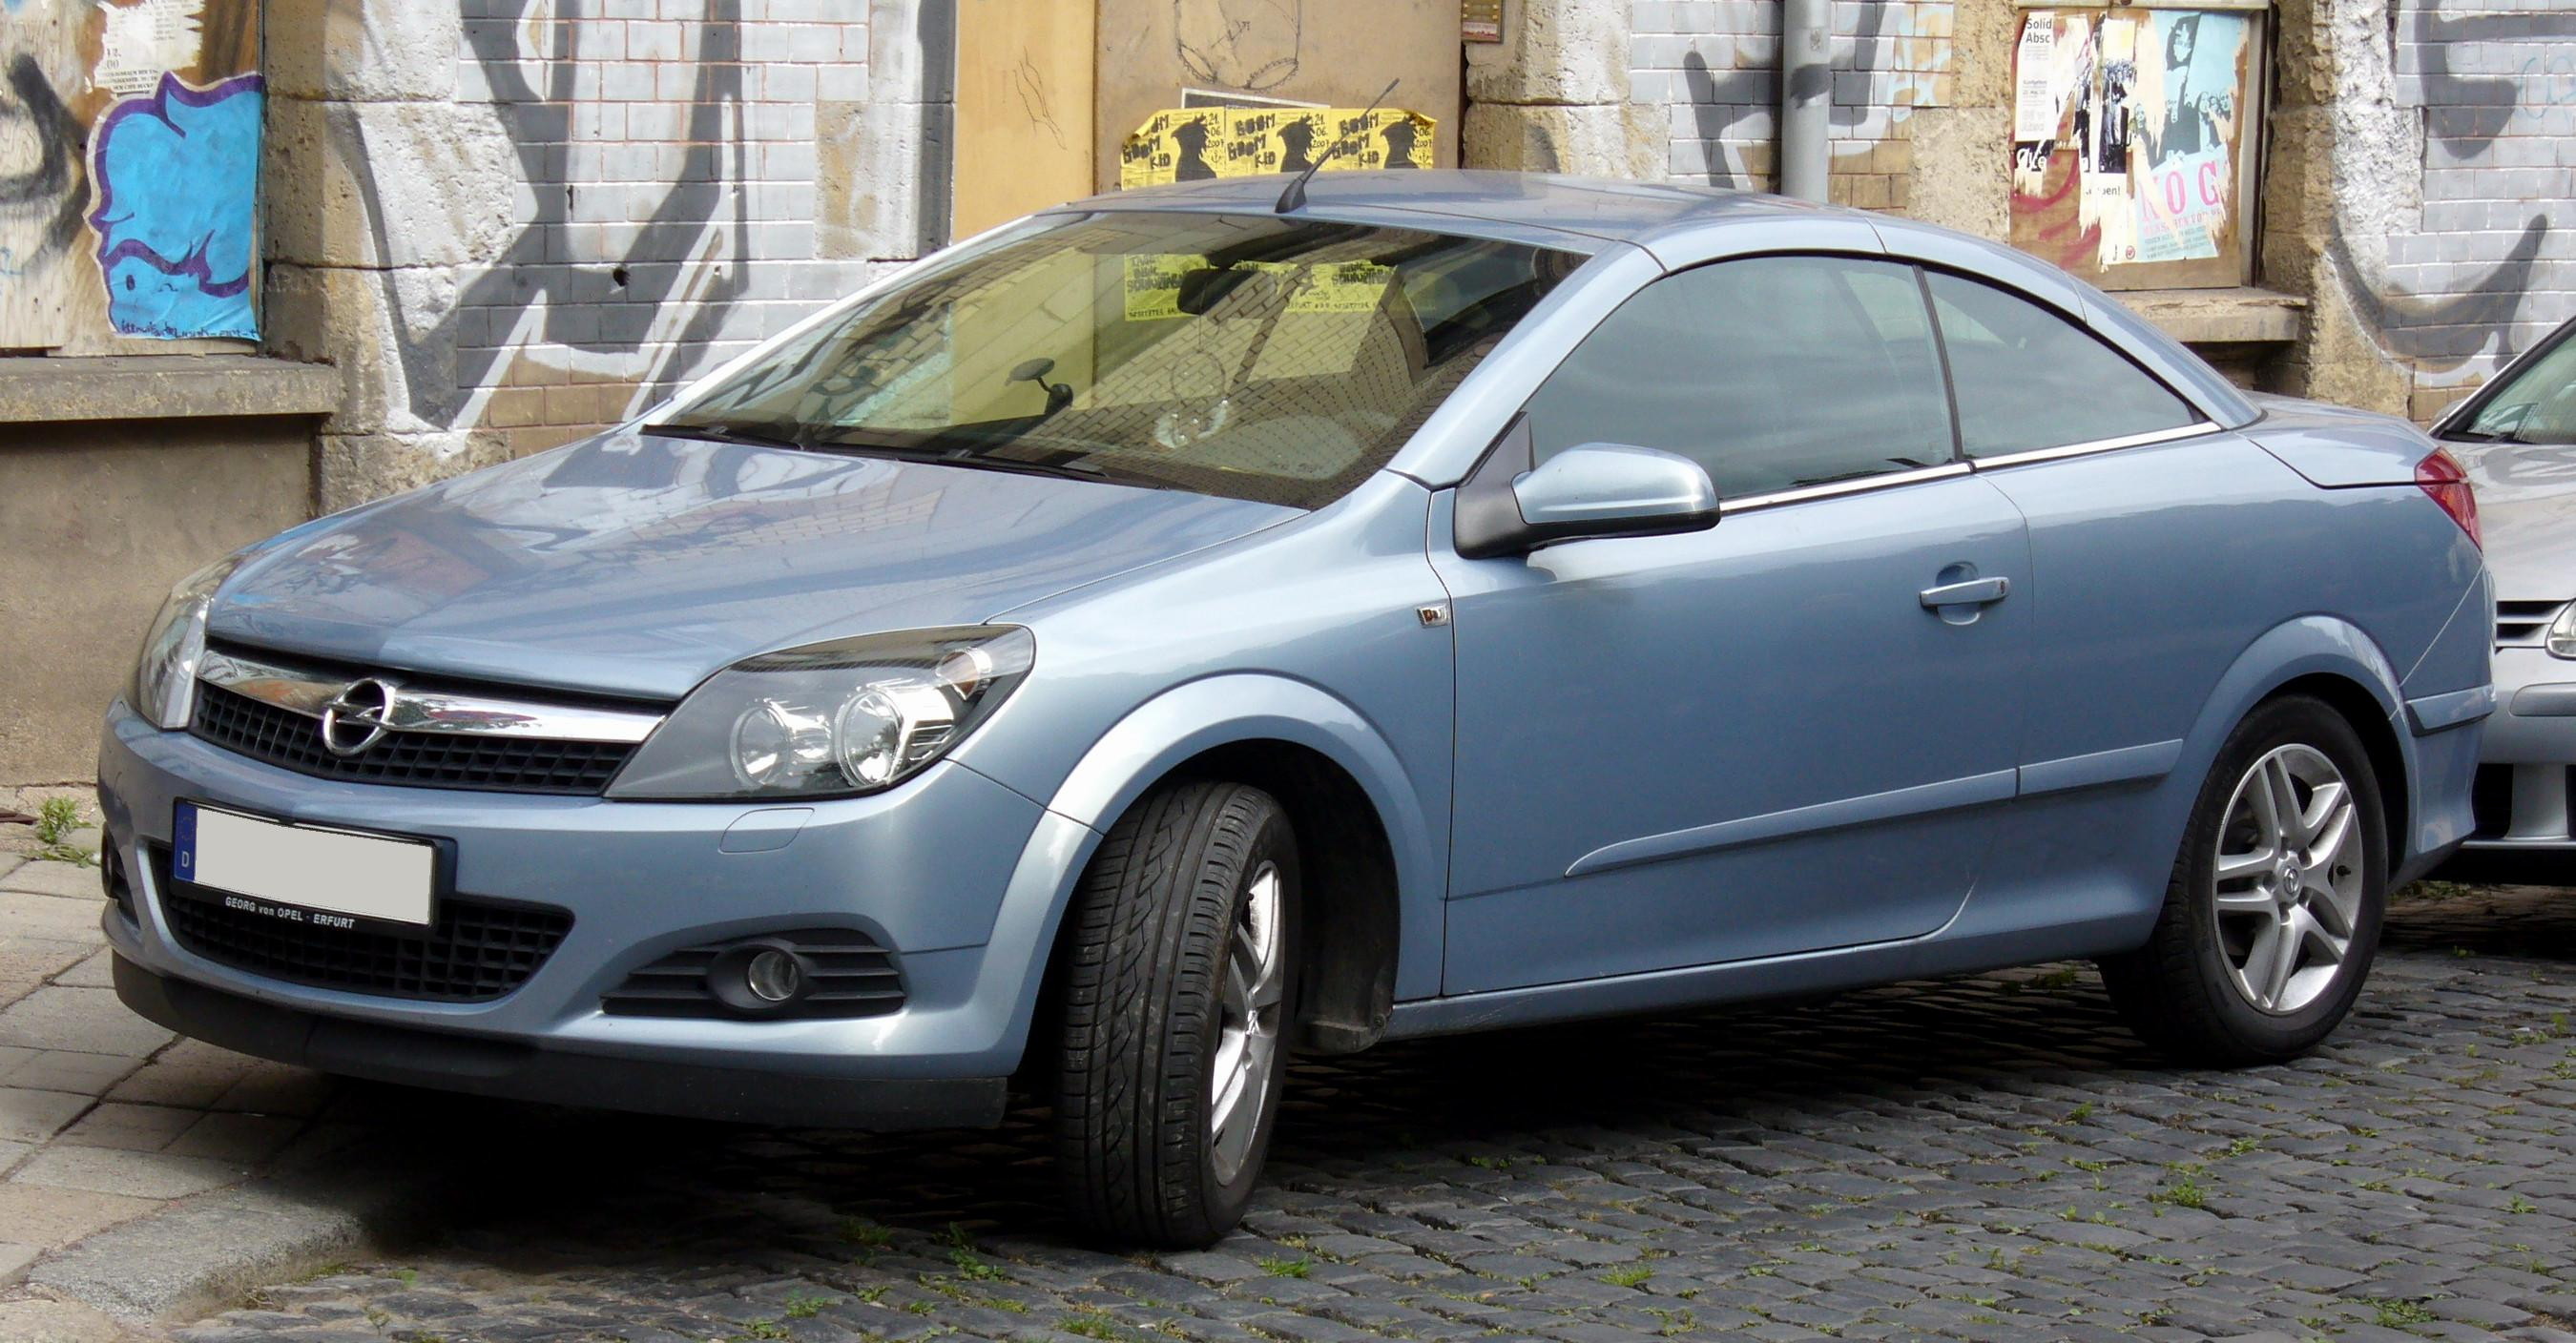 File:Opel Astra TwinTop.jpg